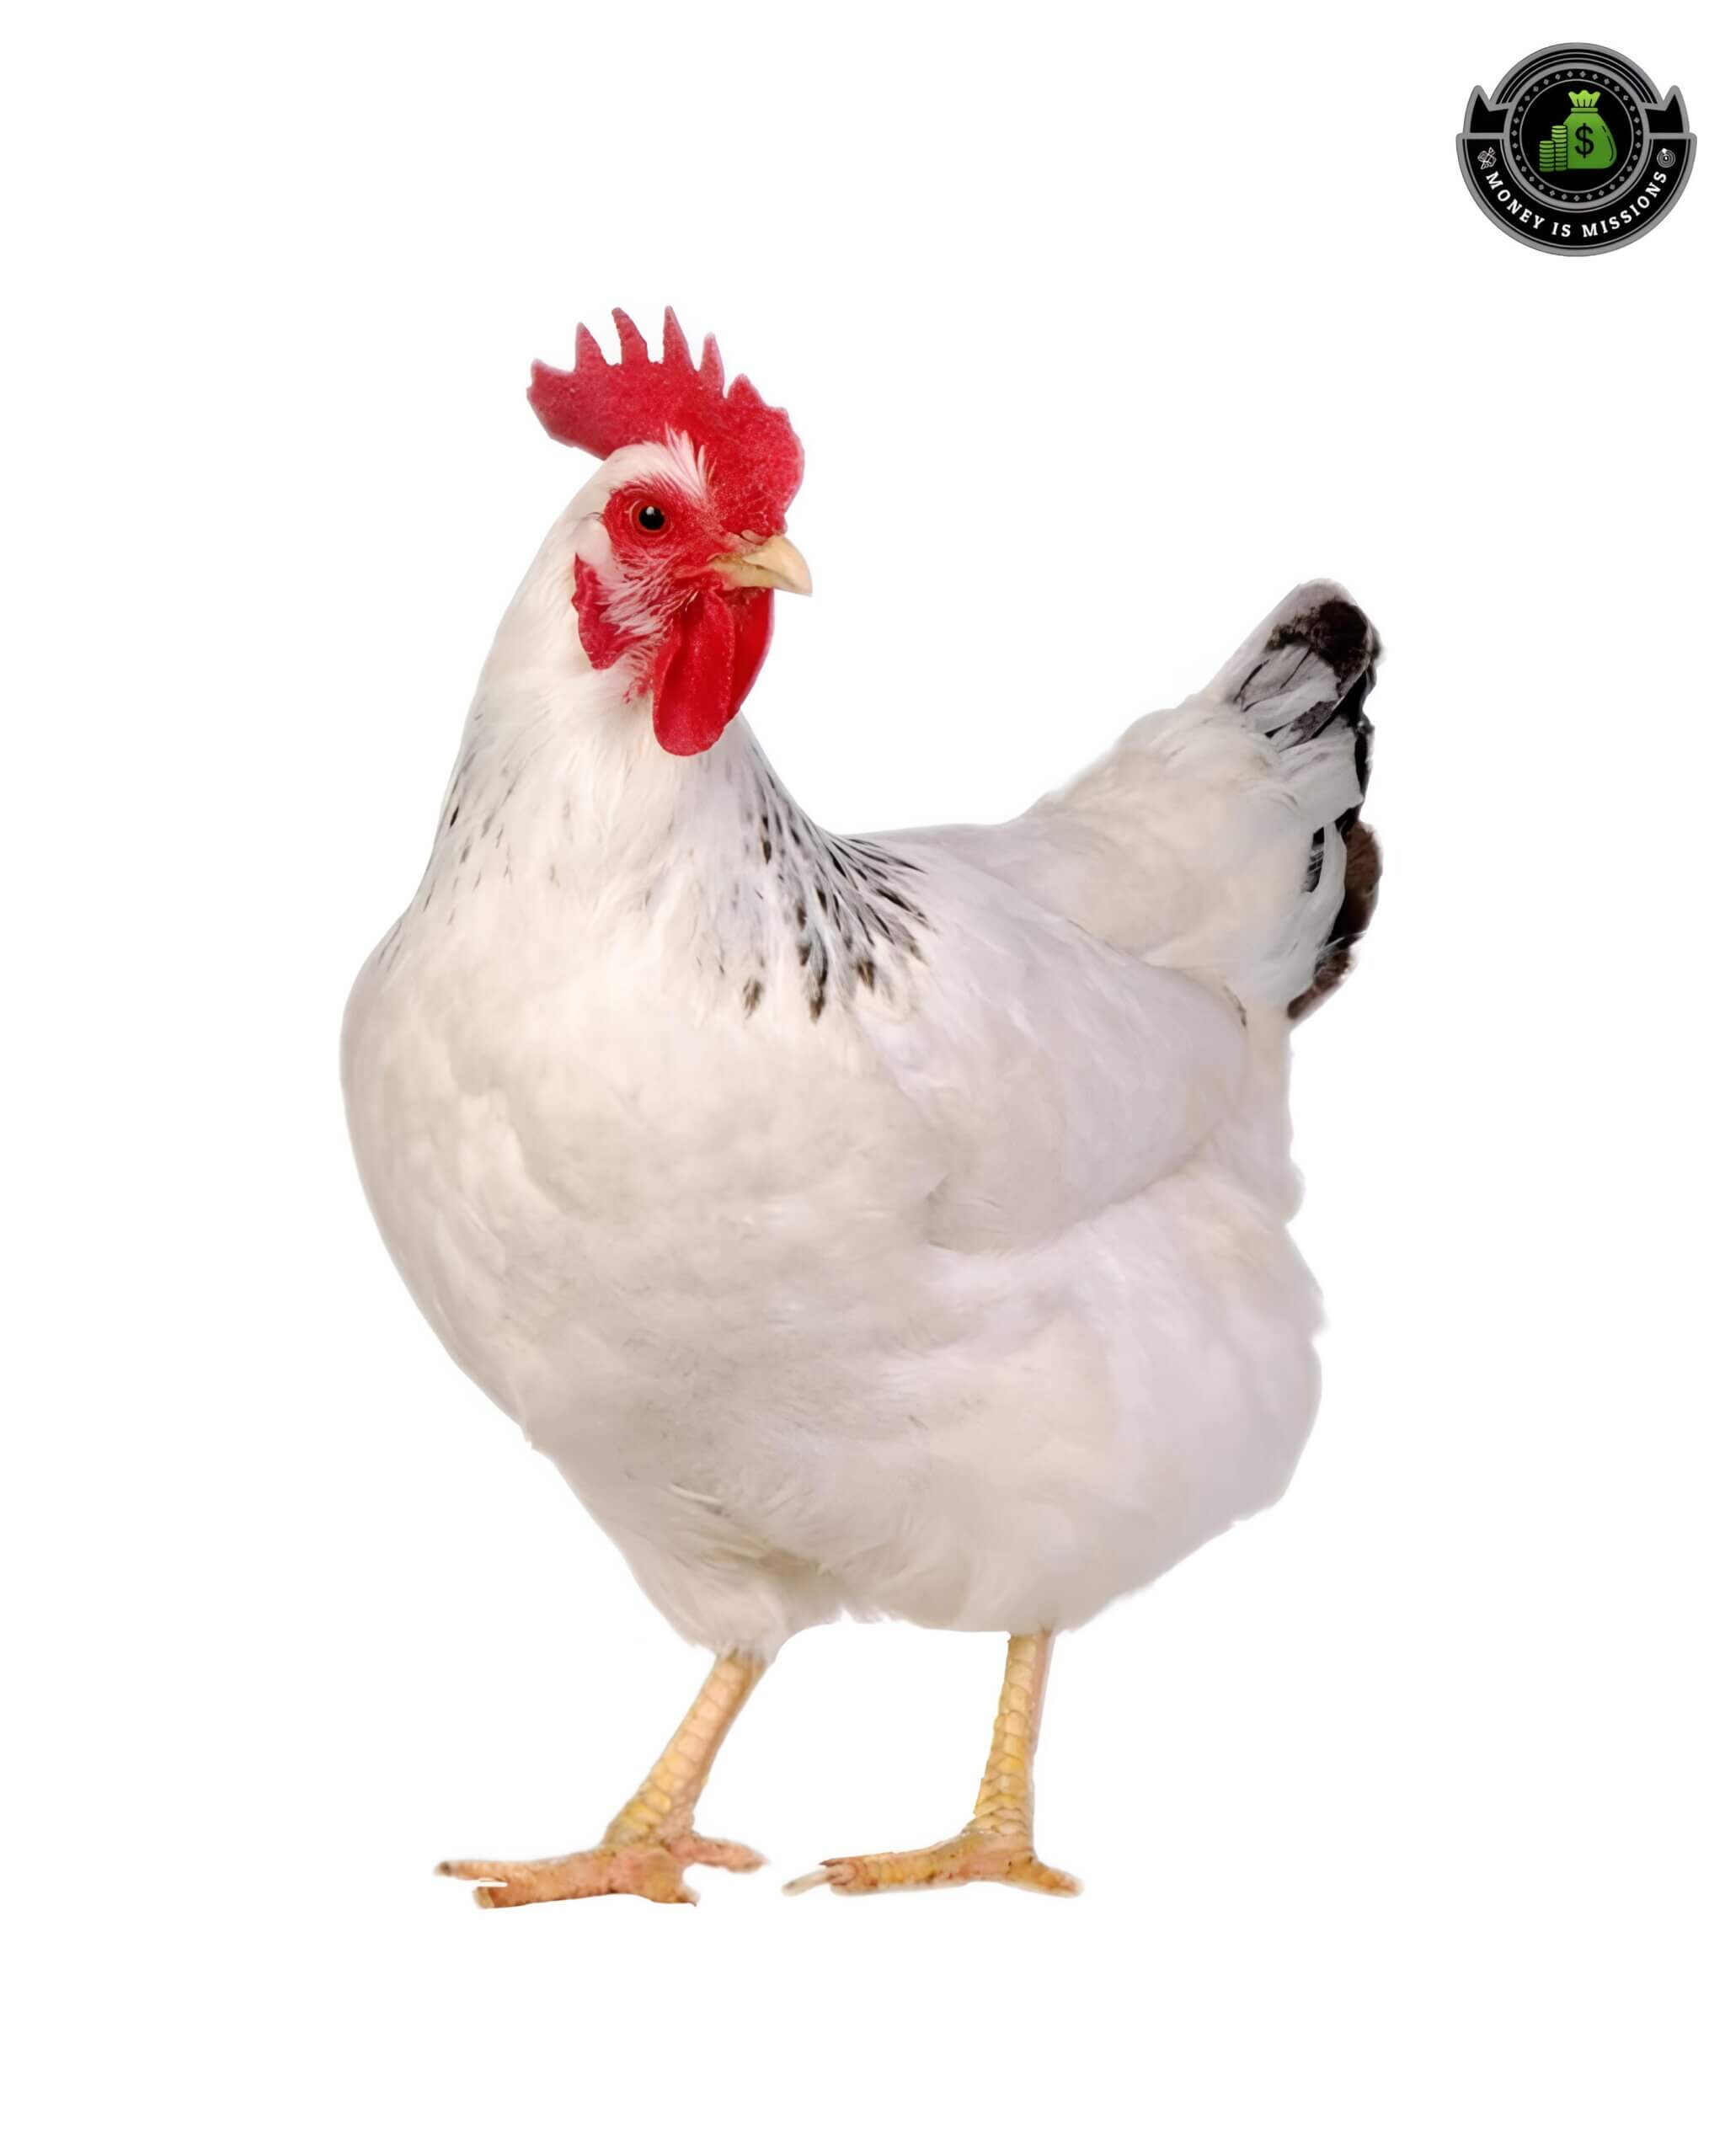 कुक्कुट पालन व्यवसाय (कोंबडी पालन) : Poultry Farm